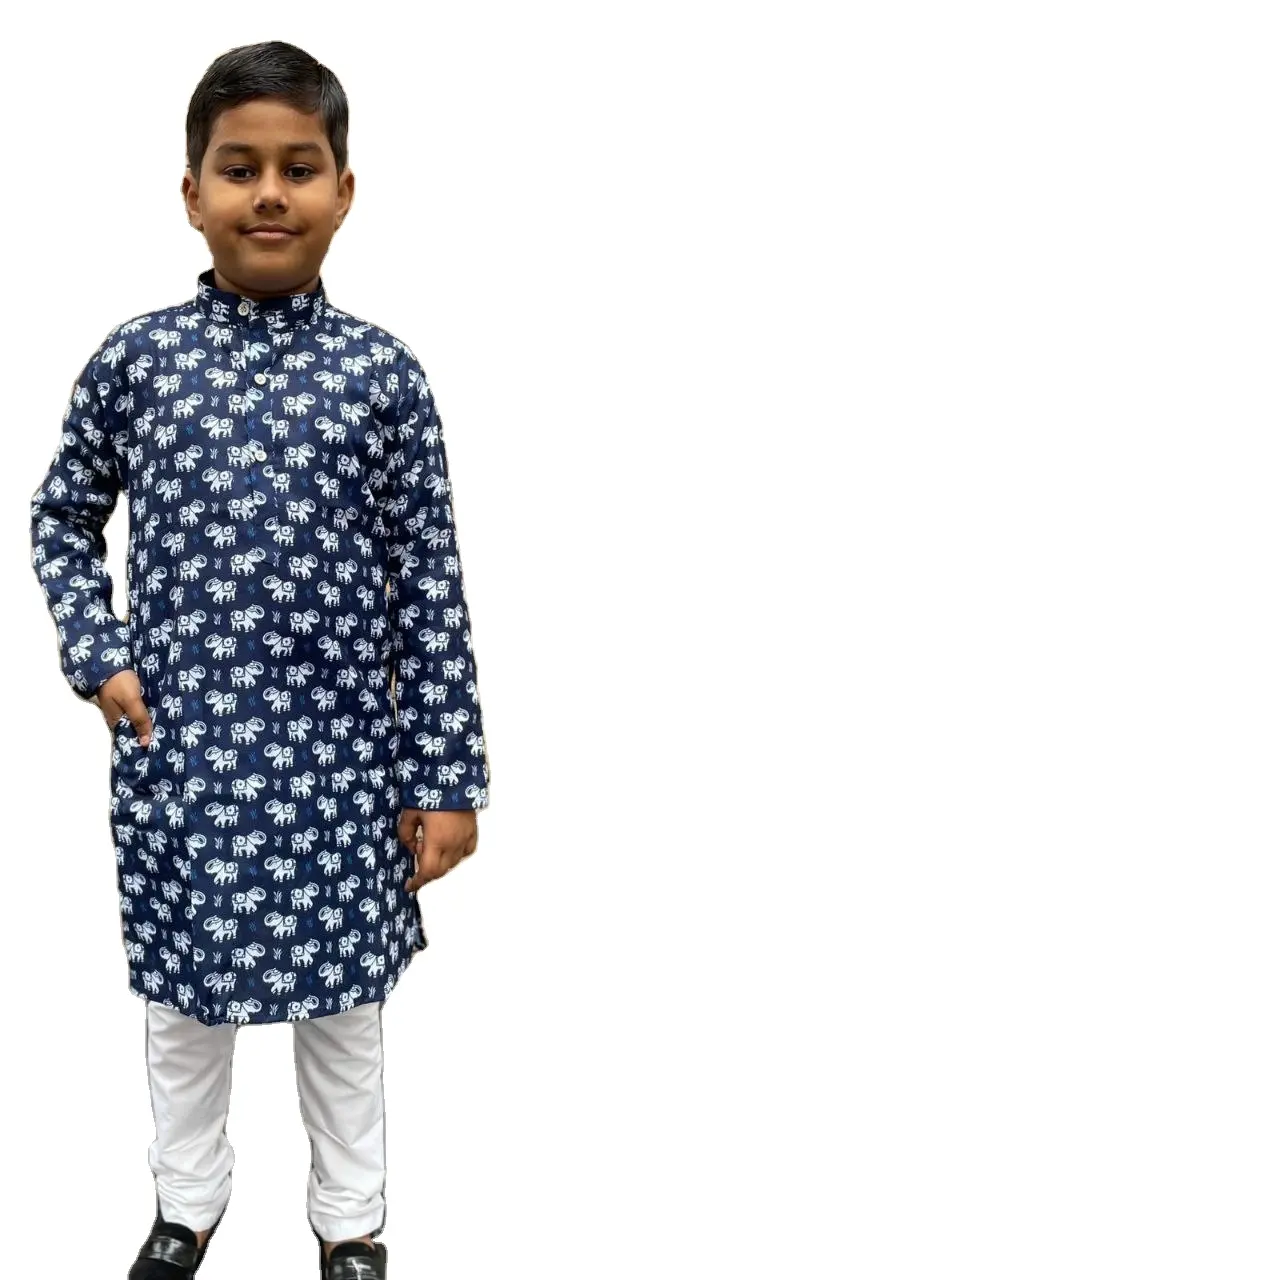 Thường xuyên và đôi khi mặc nhà thiết kế bé trai Bông kurta Pajama ăn mặc shree xuất khẩu Ấn Độ hiện tại bộ sưu tập thời thơ ấu